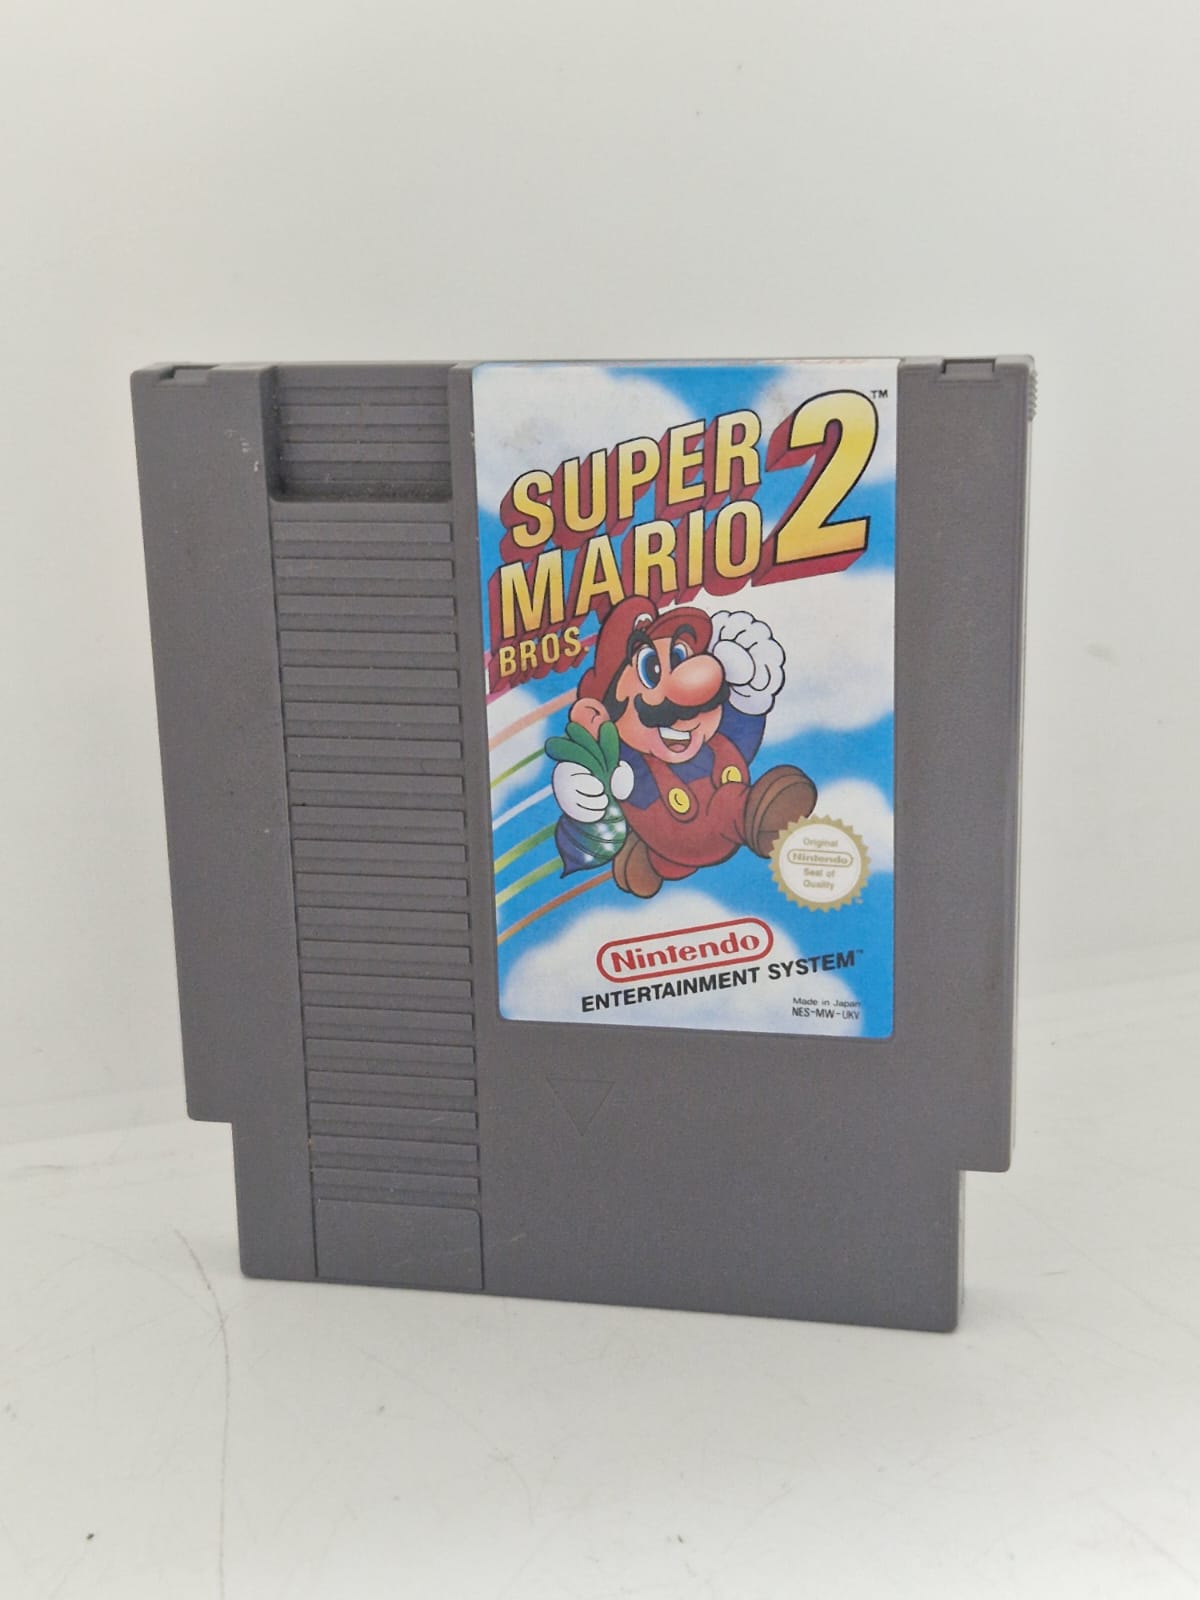 Super Mario Bros 2 (NES) Unboxed